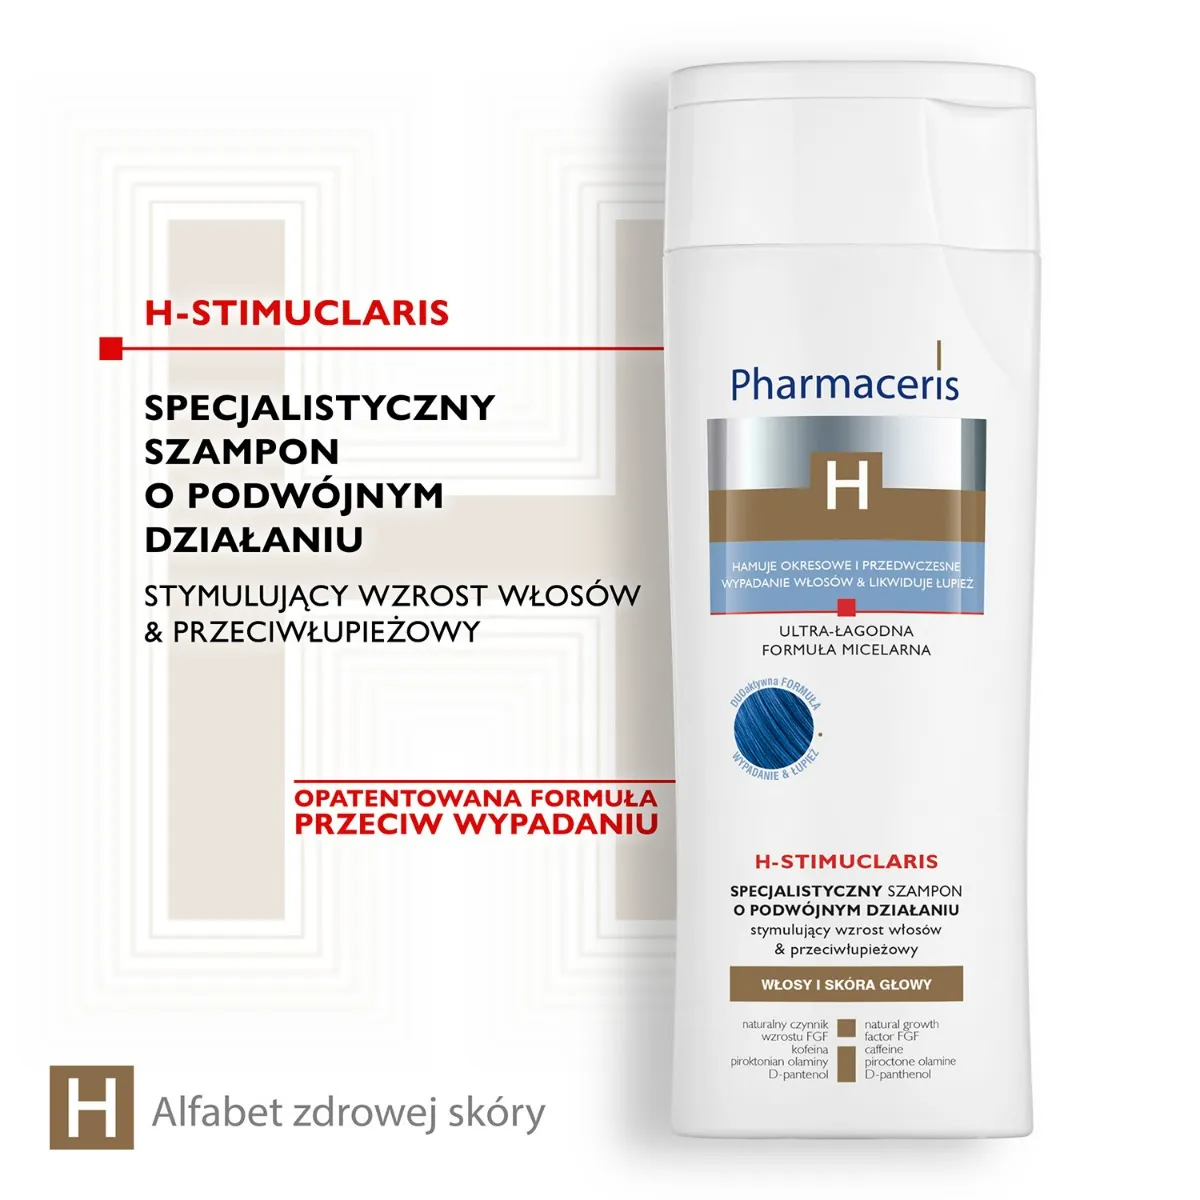 Pharmaceris H, specjalistyczny szampon stymulujący włosy i przeciwłupieżowy, 250 ml 